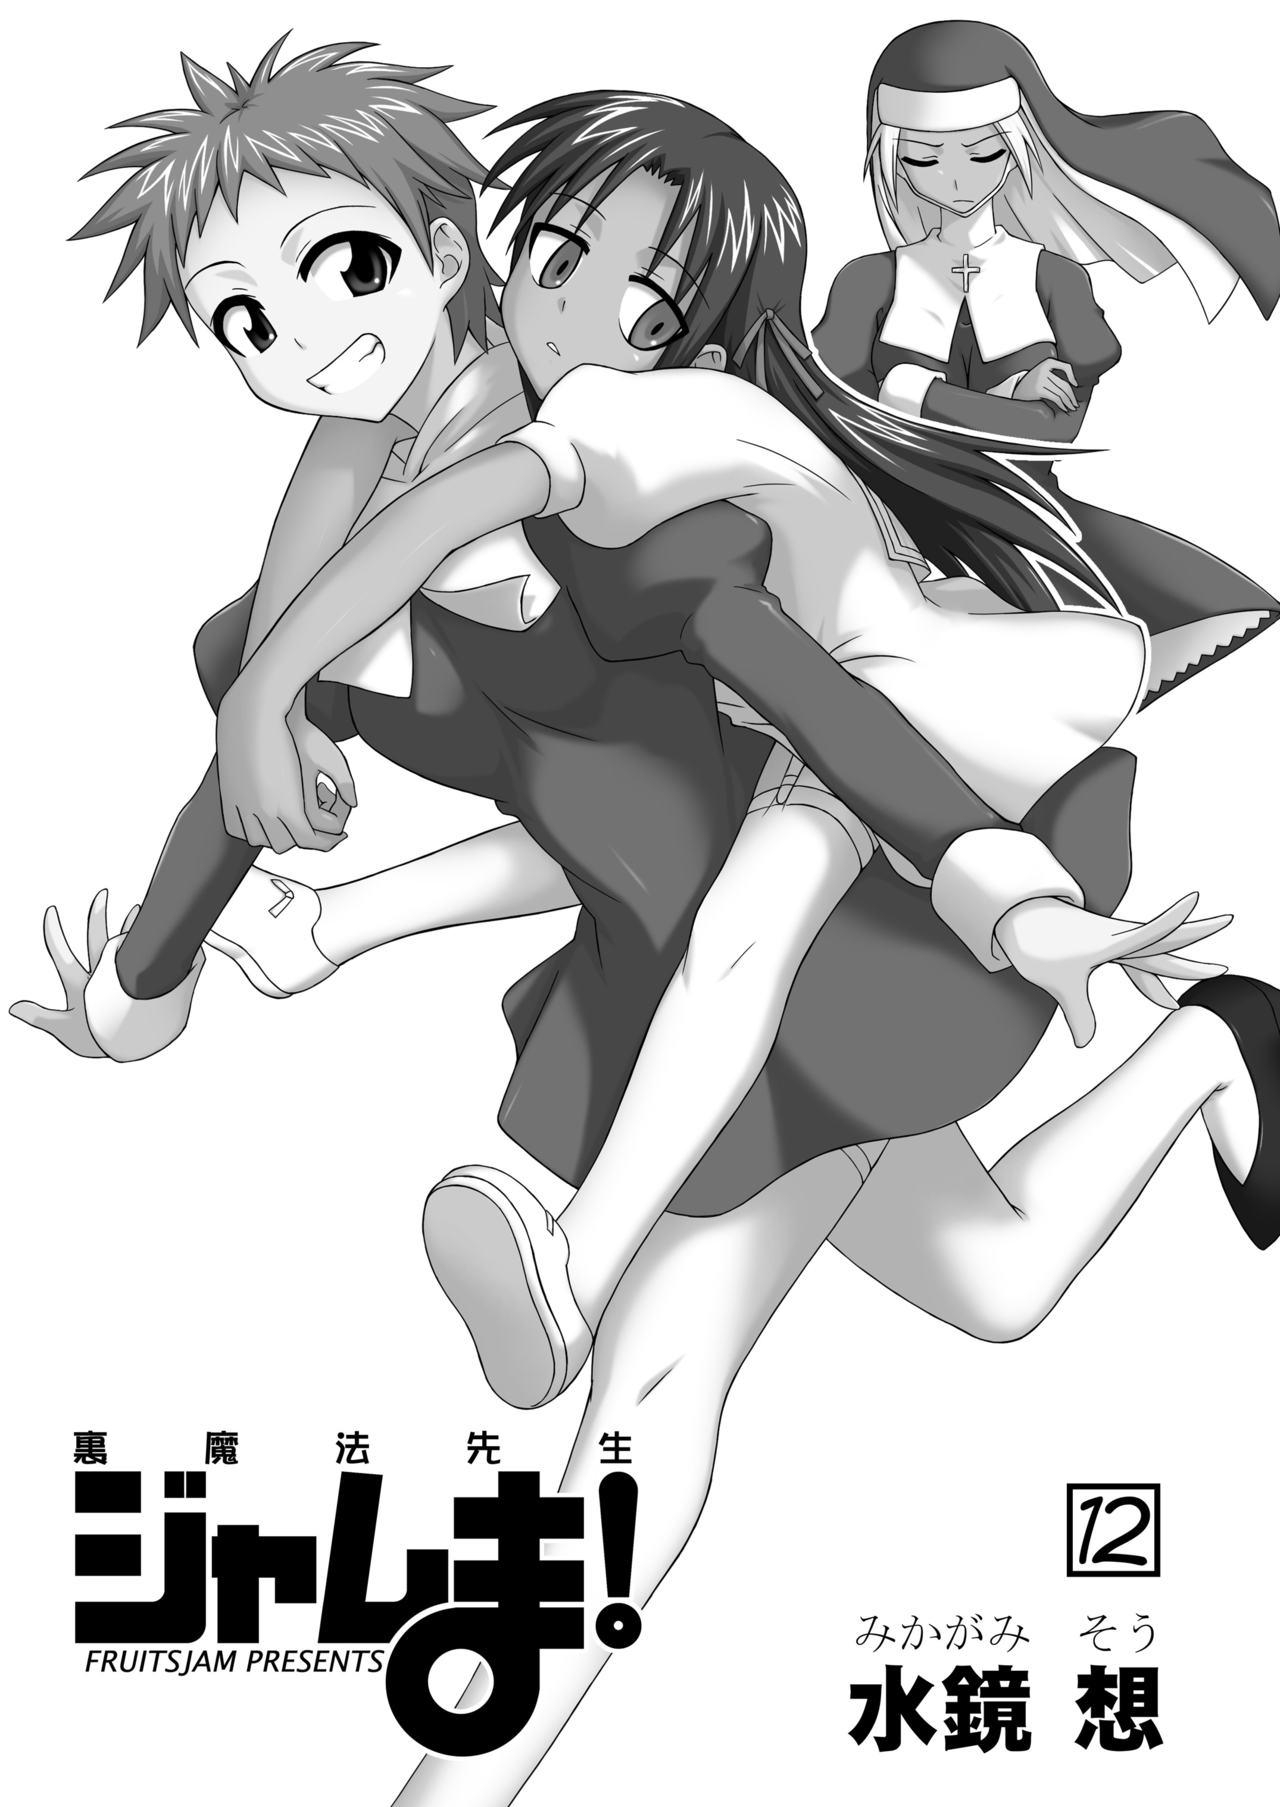 Nylon Ura Mahou Sensei Jamma! 12 - Mahou sensei negima Seduction - Page 2